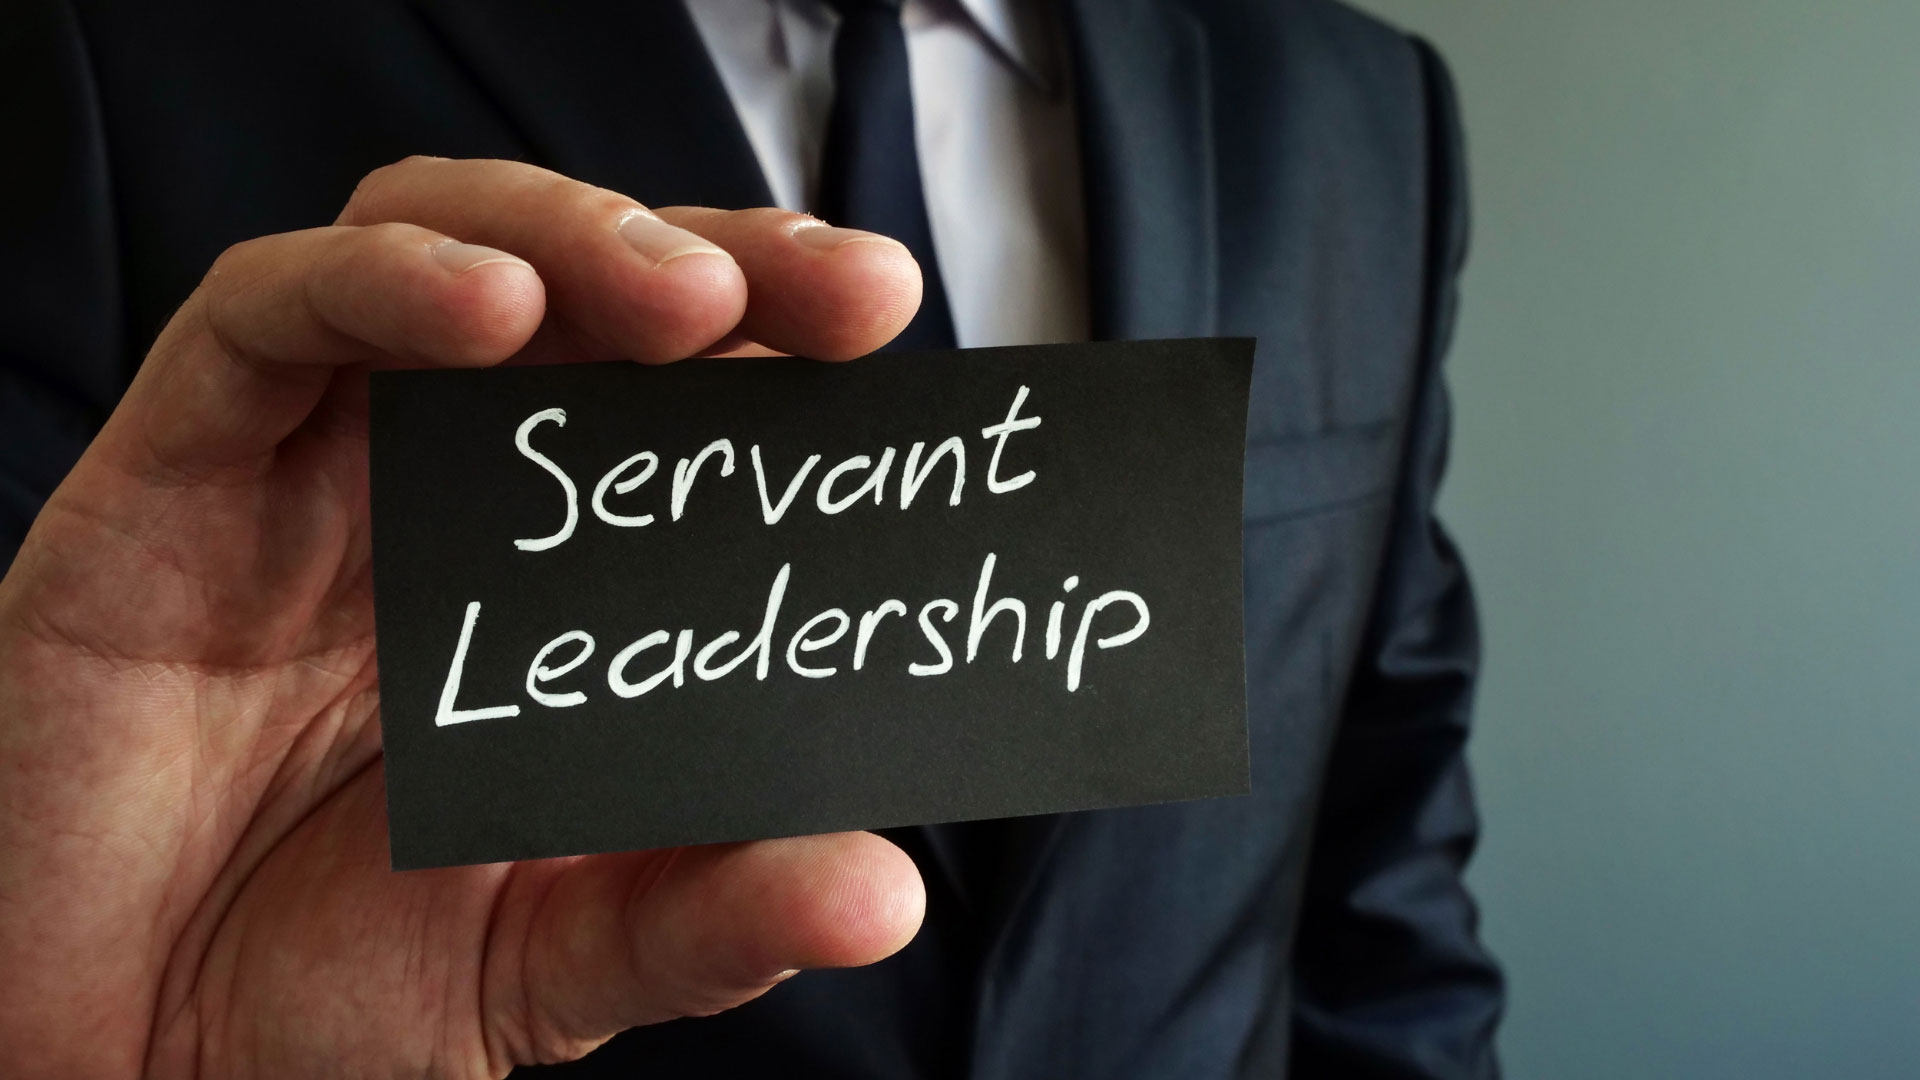 サーバントリーダーシップとは「リーダーの目標は奉仕することである」というリーダーシップ哲学です。